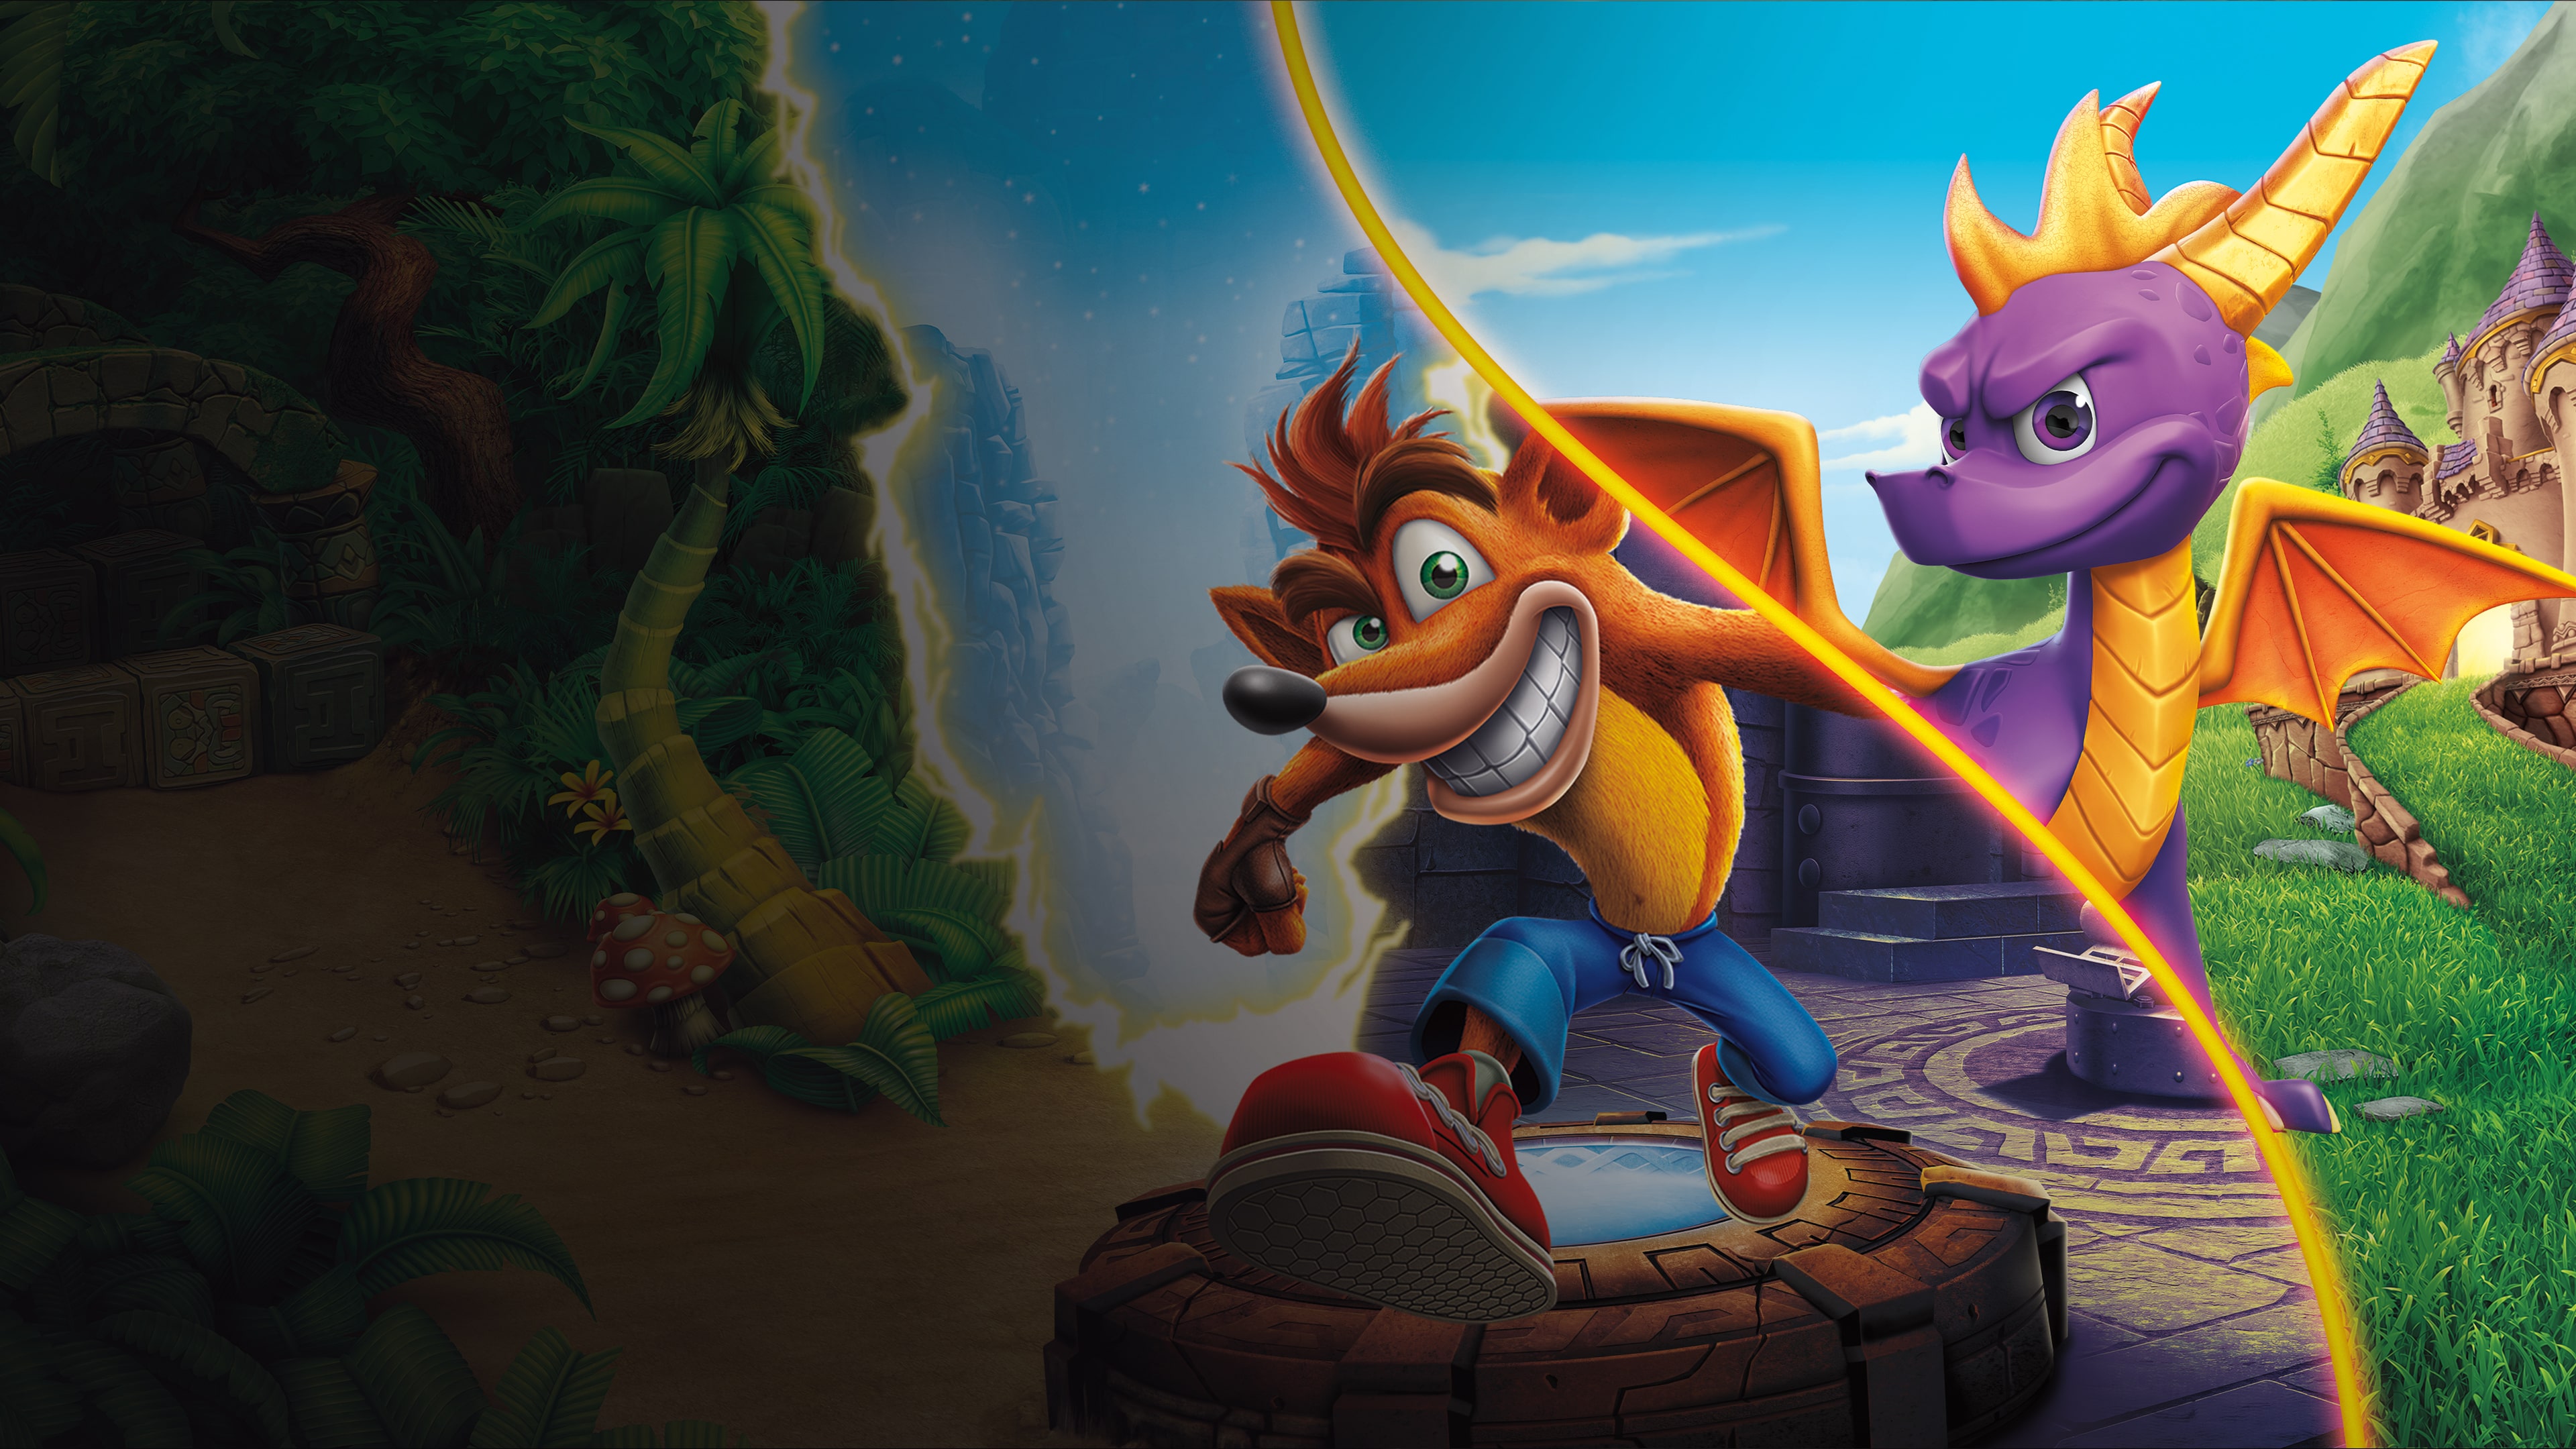 Lote de los Juegos Spyro™ + Crash Remasterizados